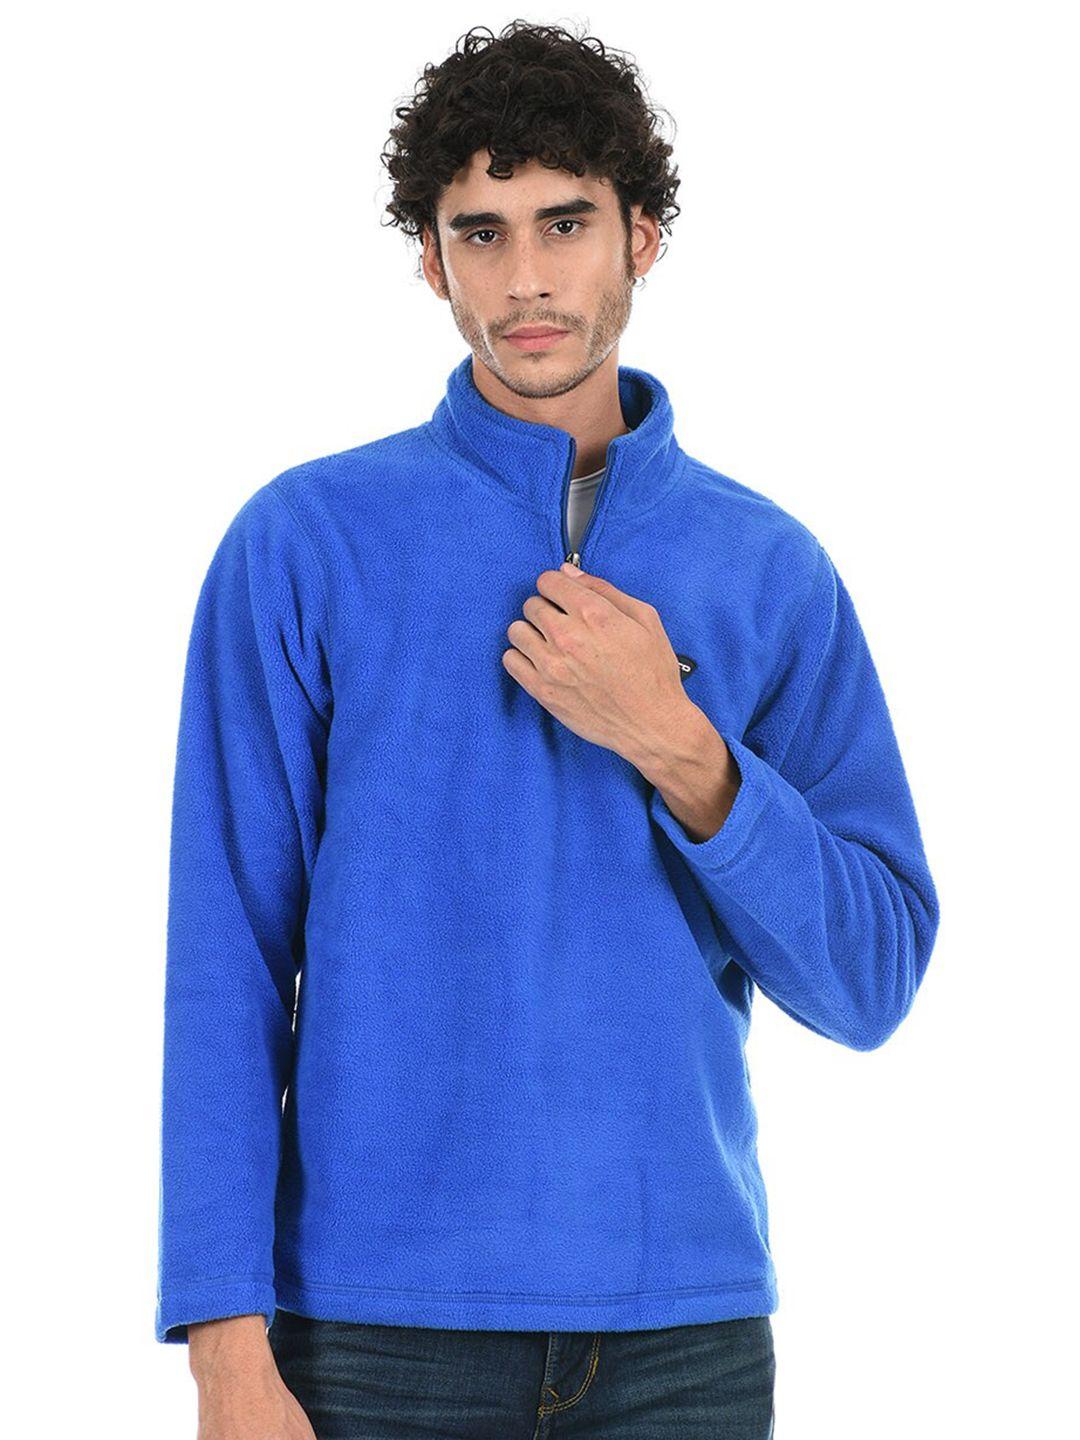 cloak & decker by monte carlo men fleece blue sweatshirt